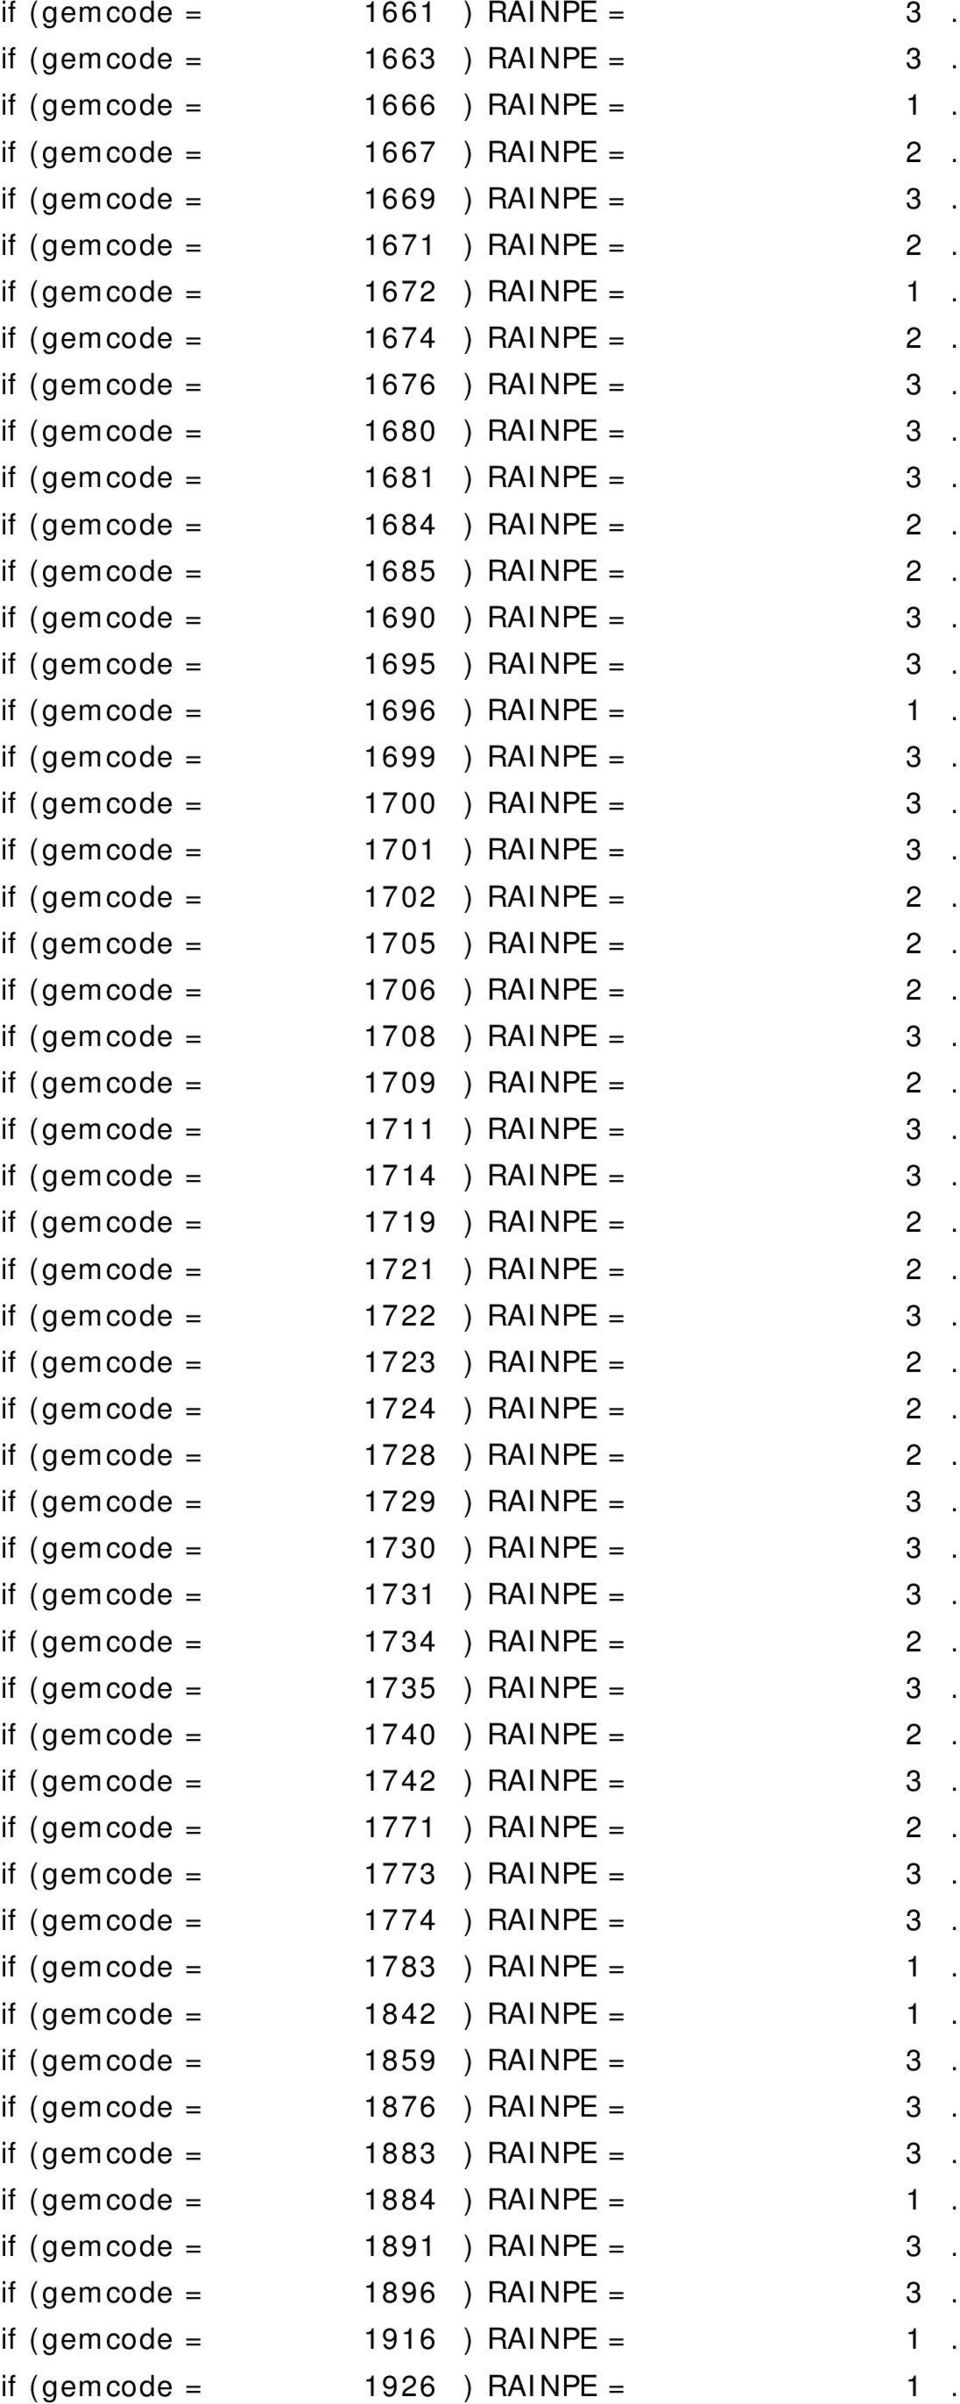 if (gemcode = 1685 ) RAINPE = 2. if (gemcode = 1690 ) RAINPE = 3. if (gemcode = 1695 ) RAINPE = 3. if (gemcode = 1696 ) RAINPE = 1. if (gemcode = 1699 ) RAINPE = 3. if (gemcode = 1700 ) RAINPE = 3.